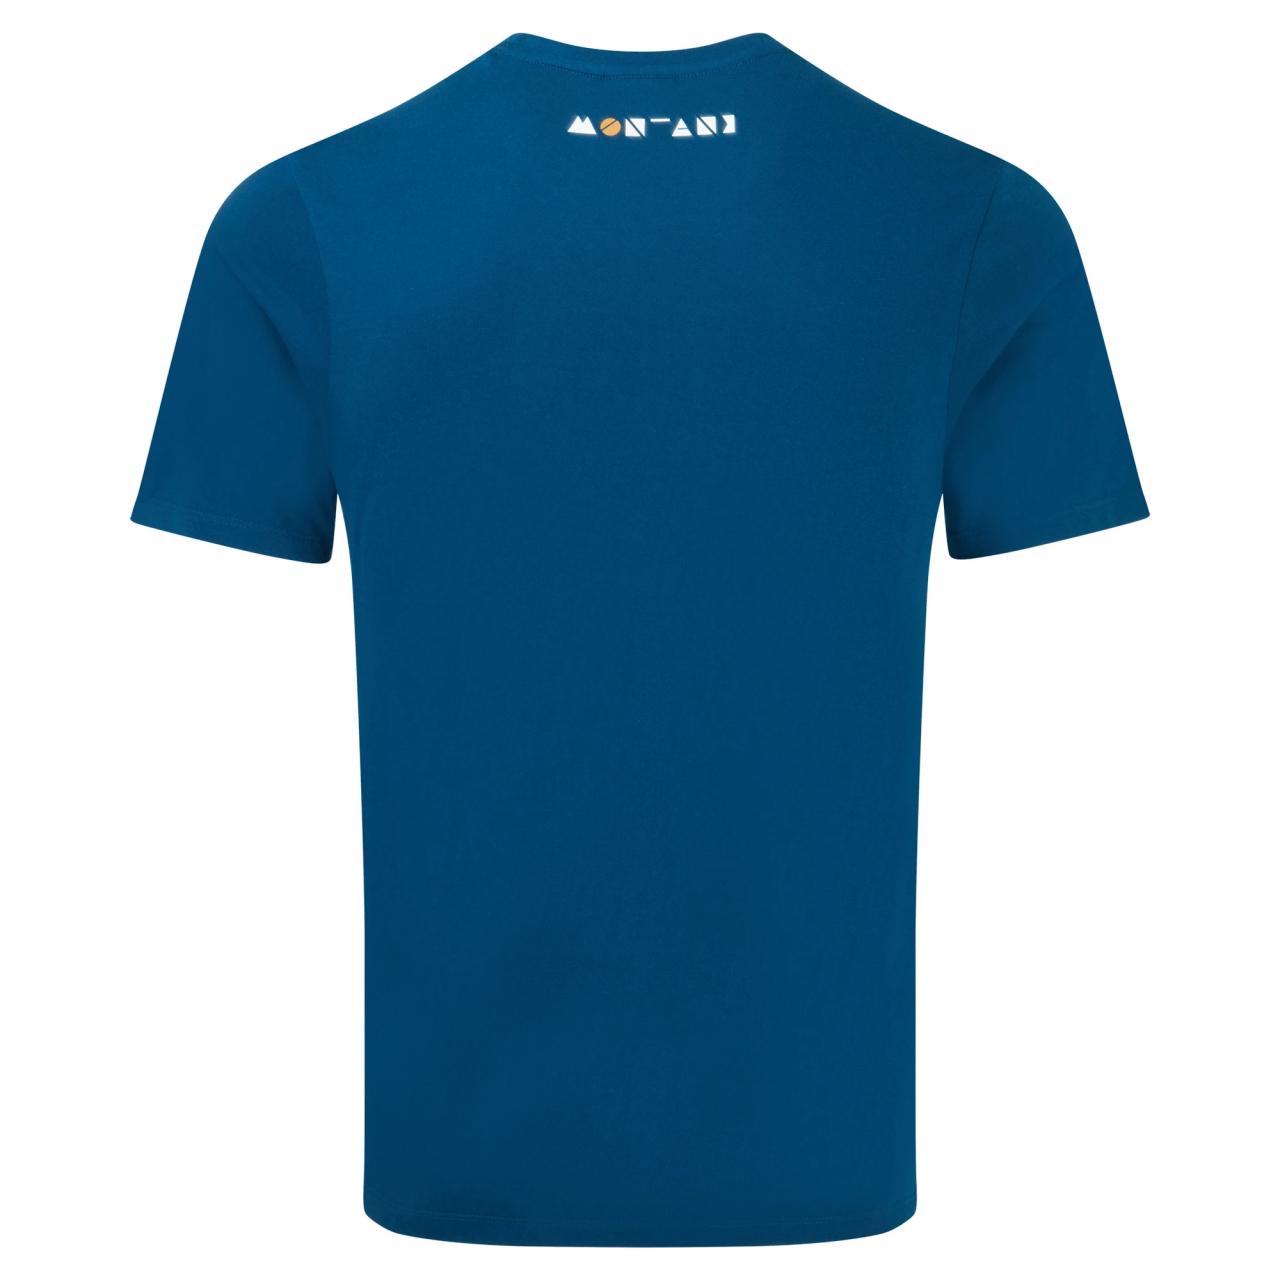 GEOMETRY T-SHIRT-NARWHAL BLUE-M pánské tričko modré